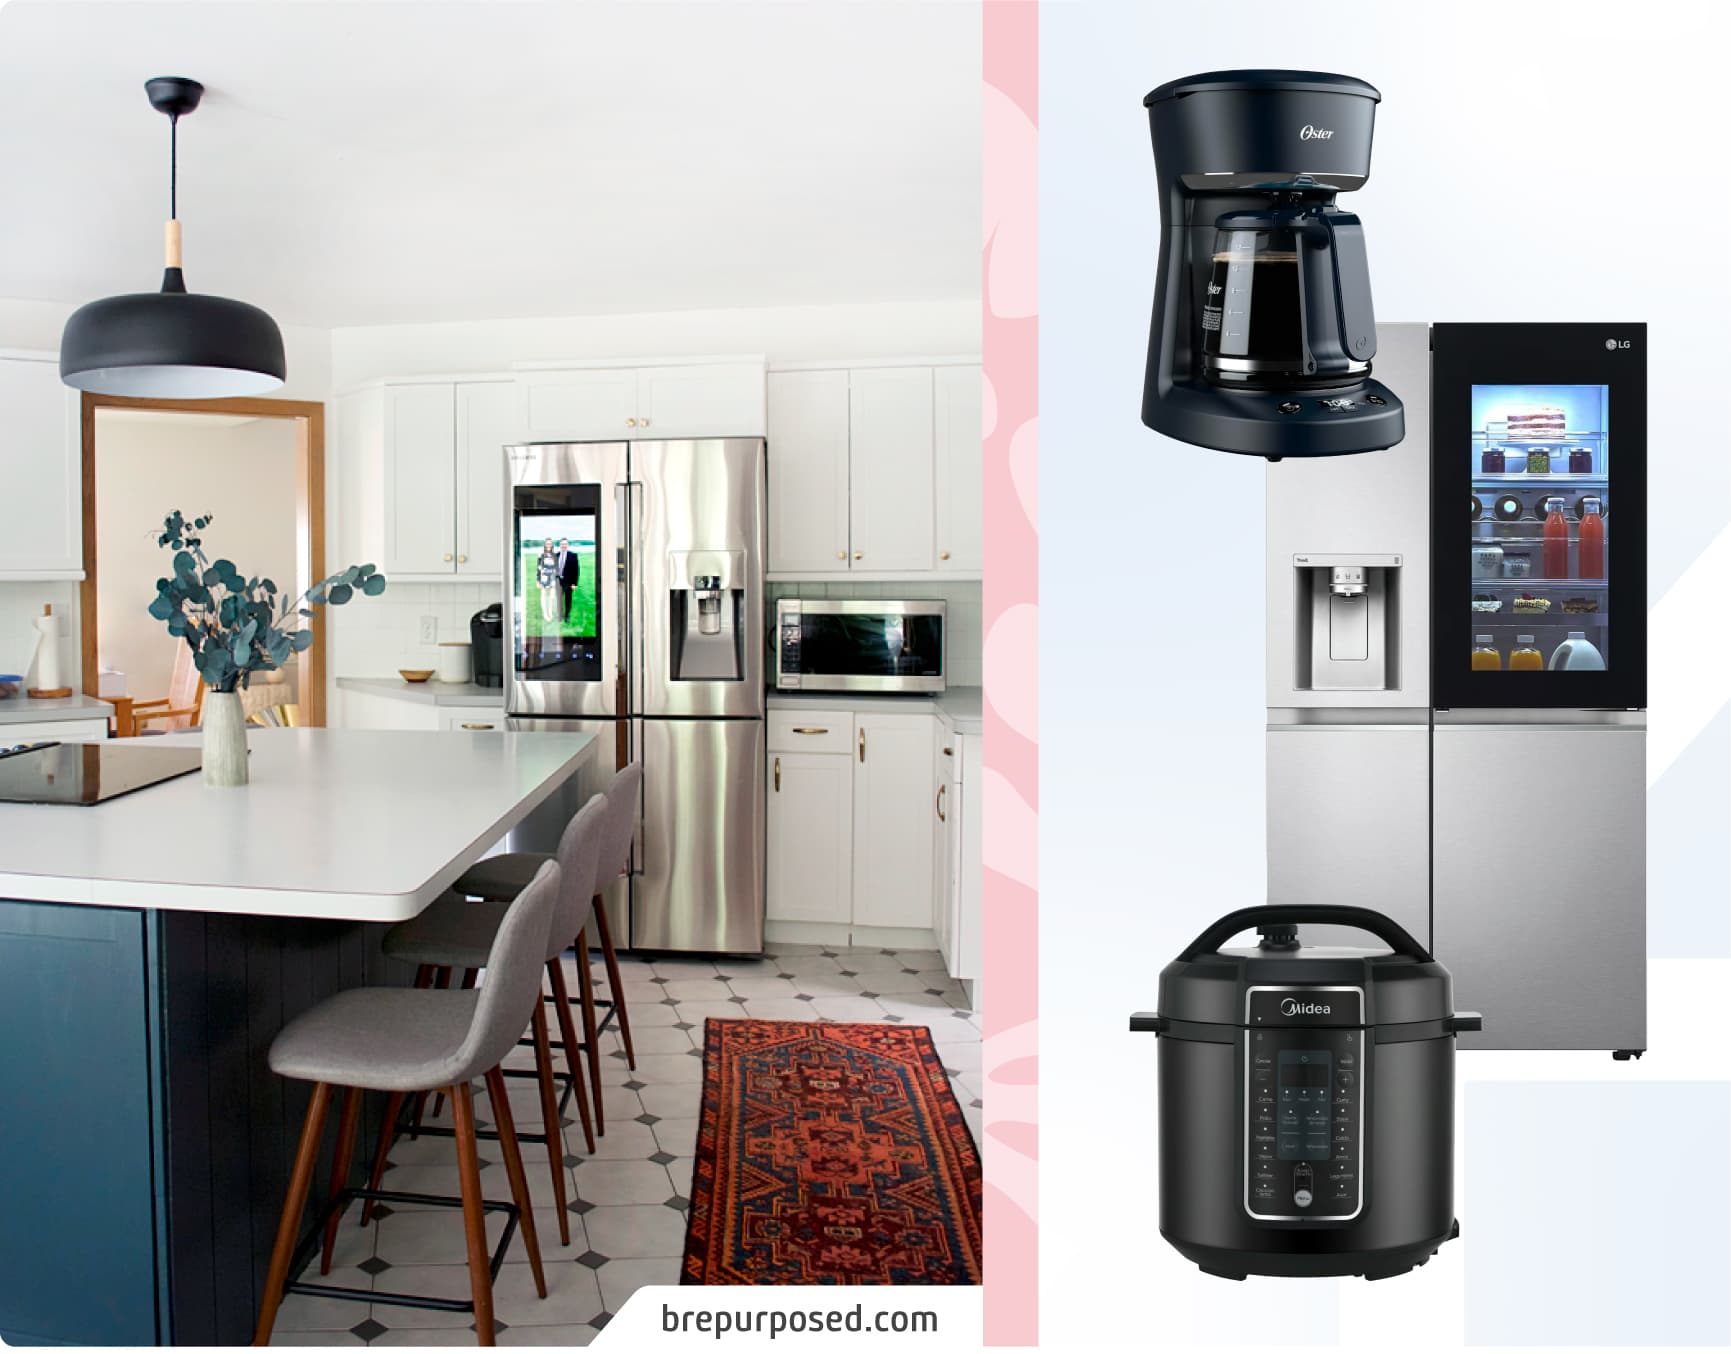 Moodboard Sodimac con foto de cocina moderna y electrodomésticos inteligentes. Los productos Sodimac son una cafetera negra, un refrigerador inteligente y una freidora de aire.